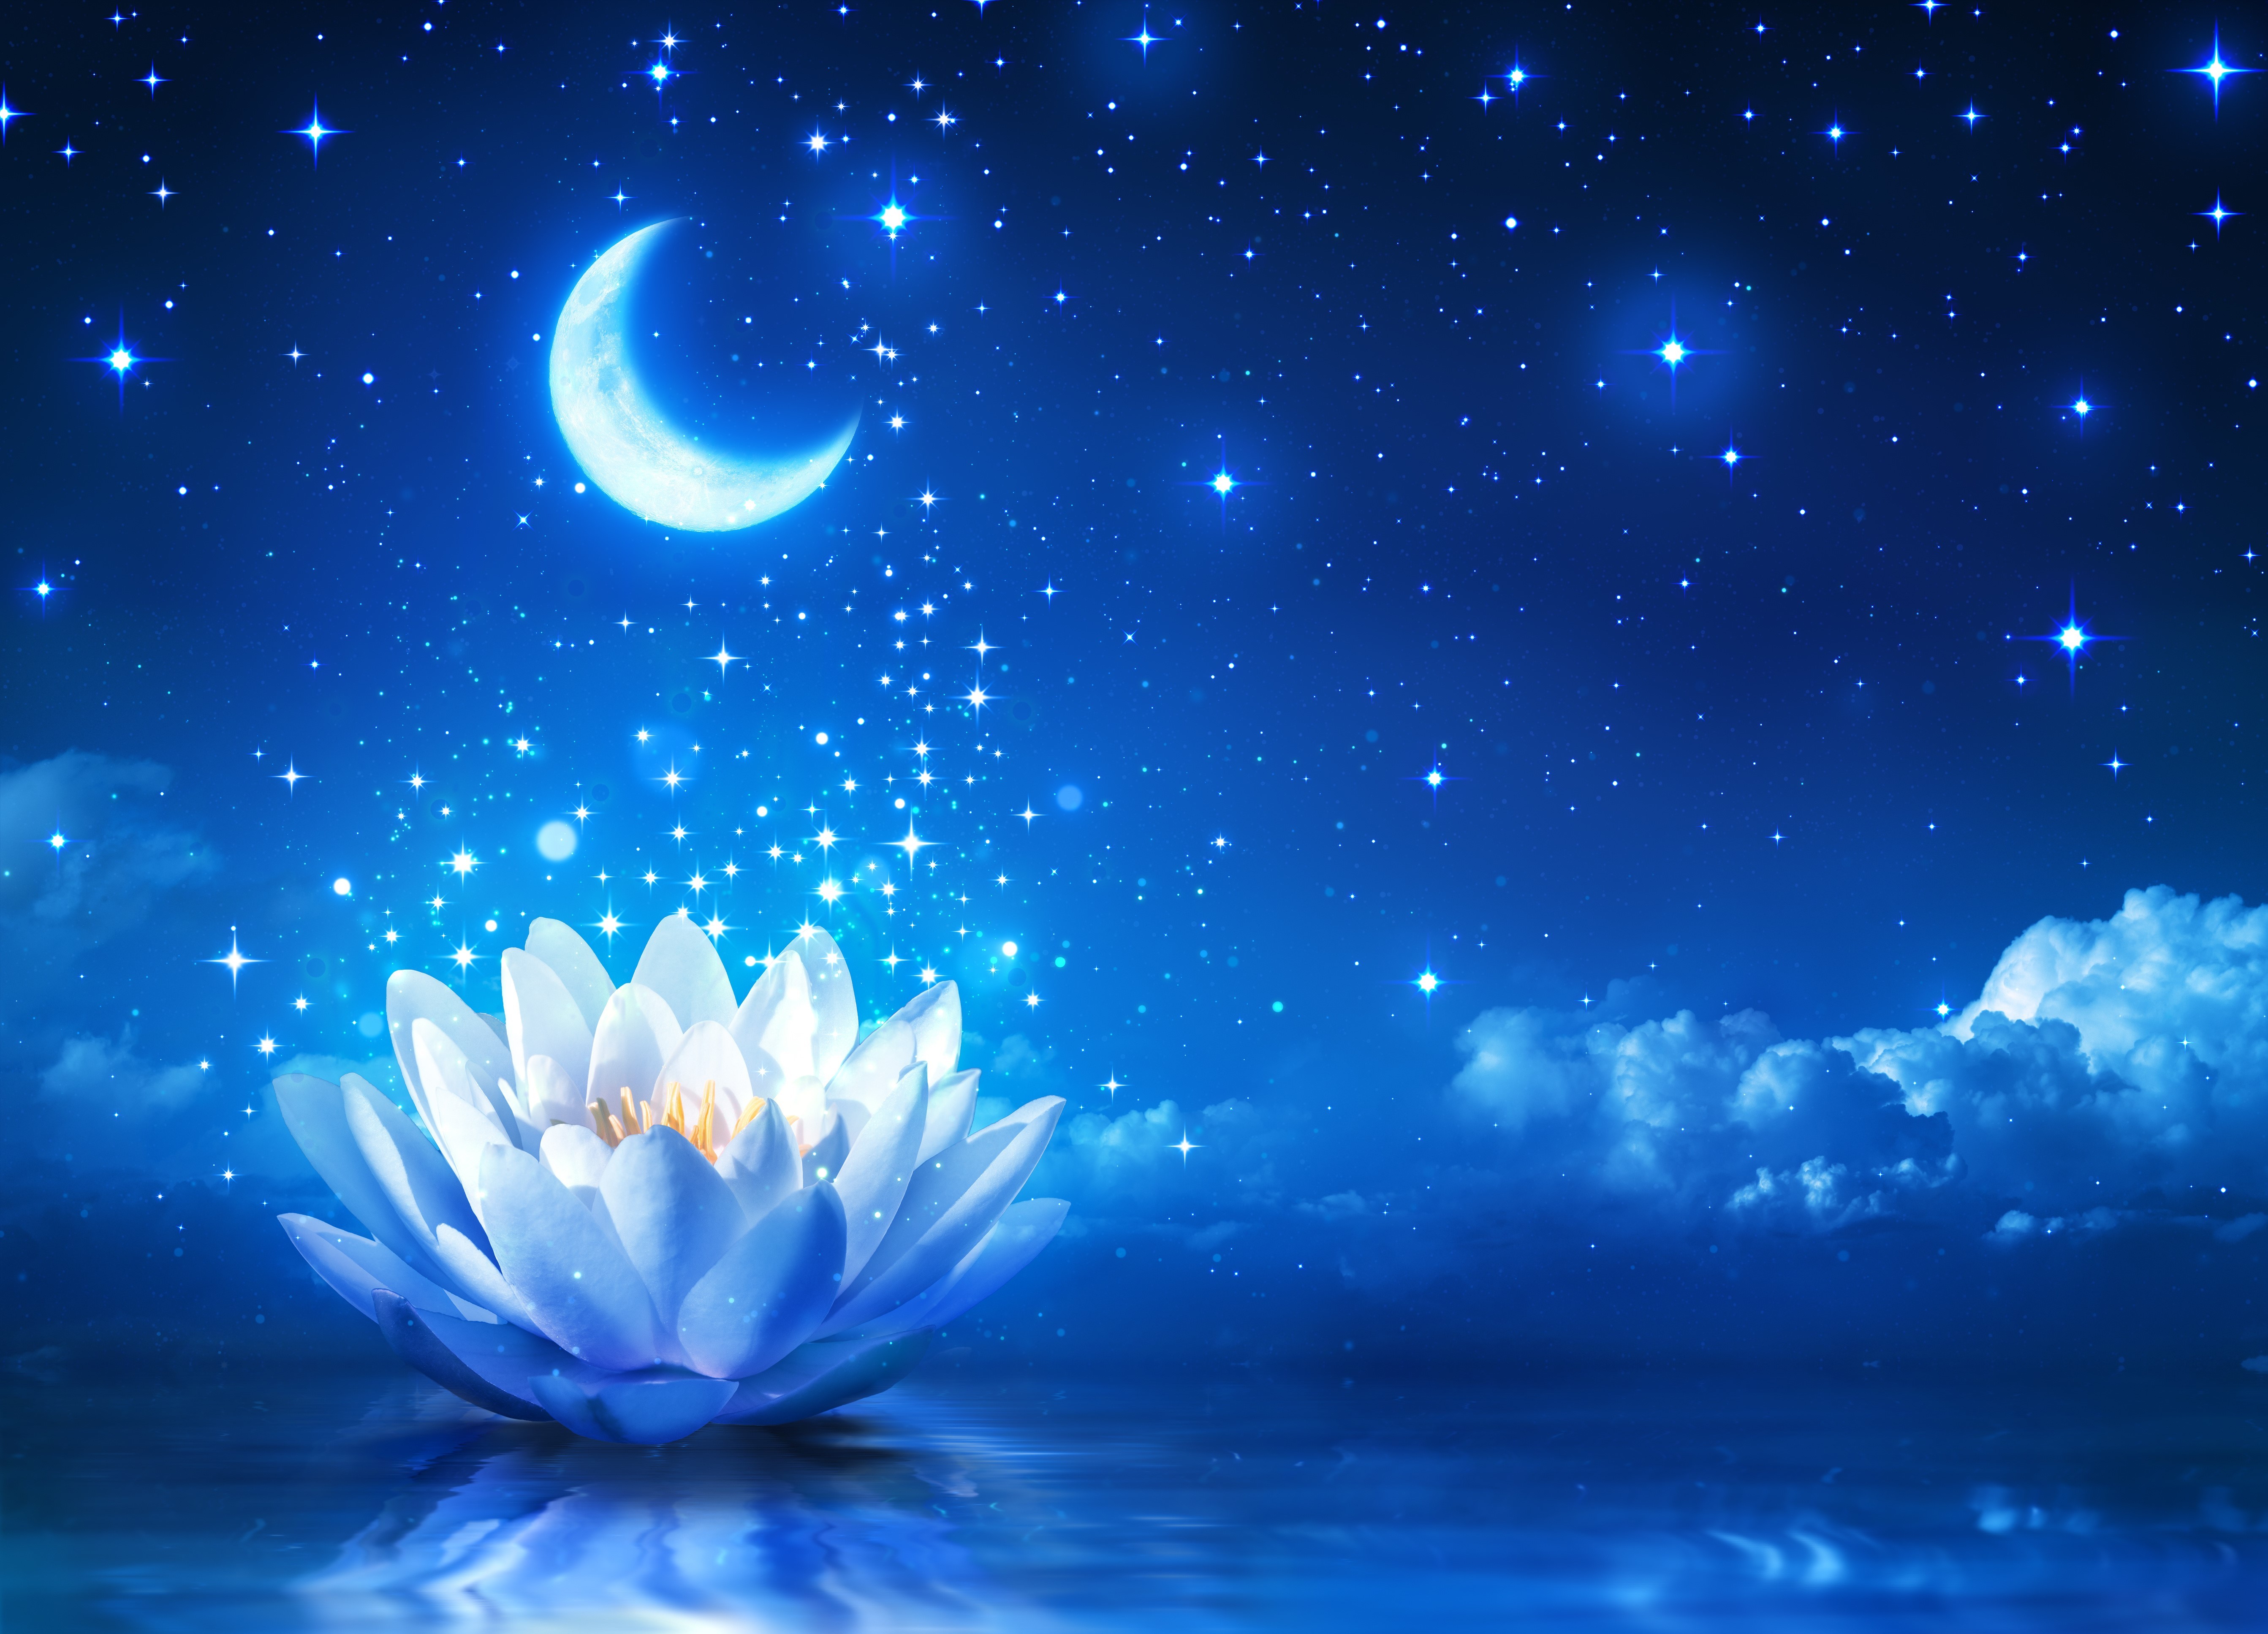 Moon, Sky, Night, Lotus flowers, Stars Wallpapers HD / Desktop and